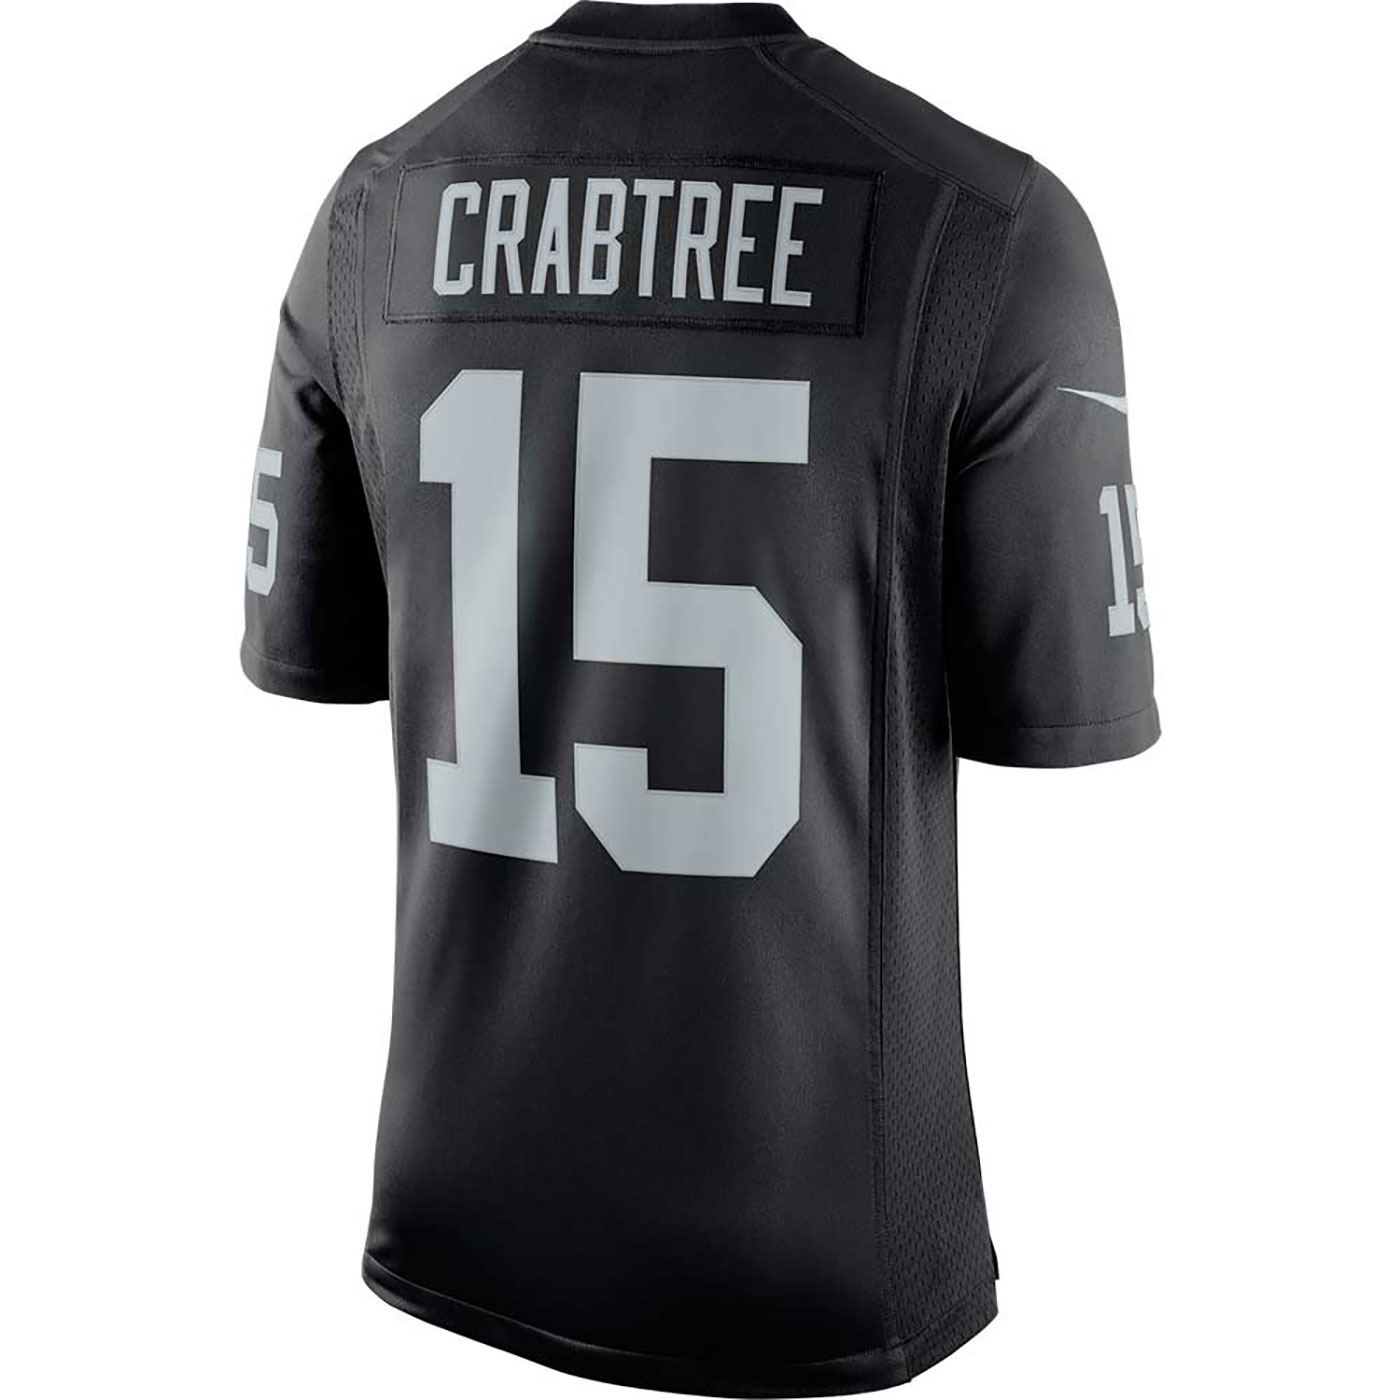 crabtree jersey